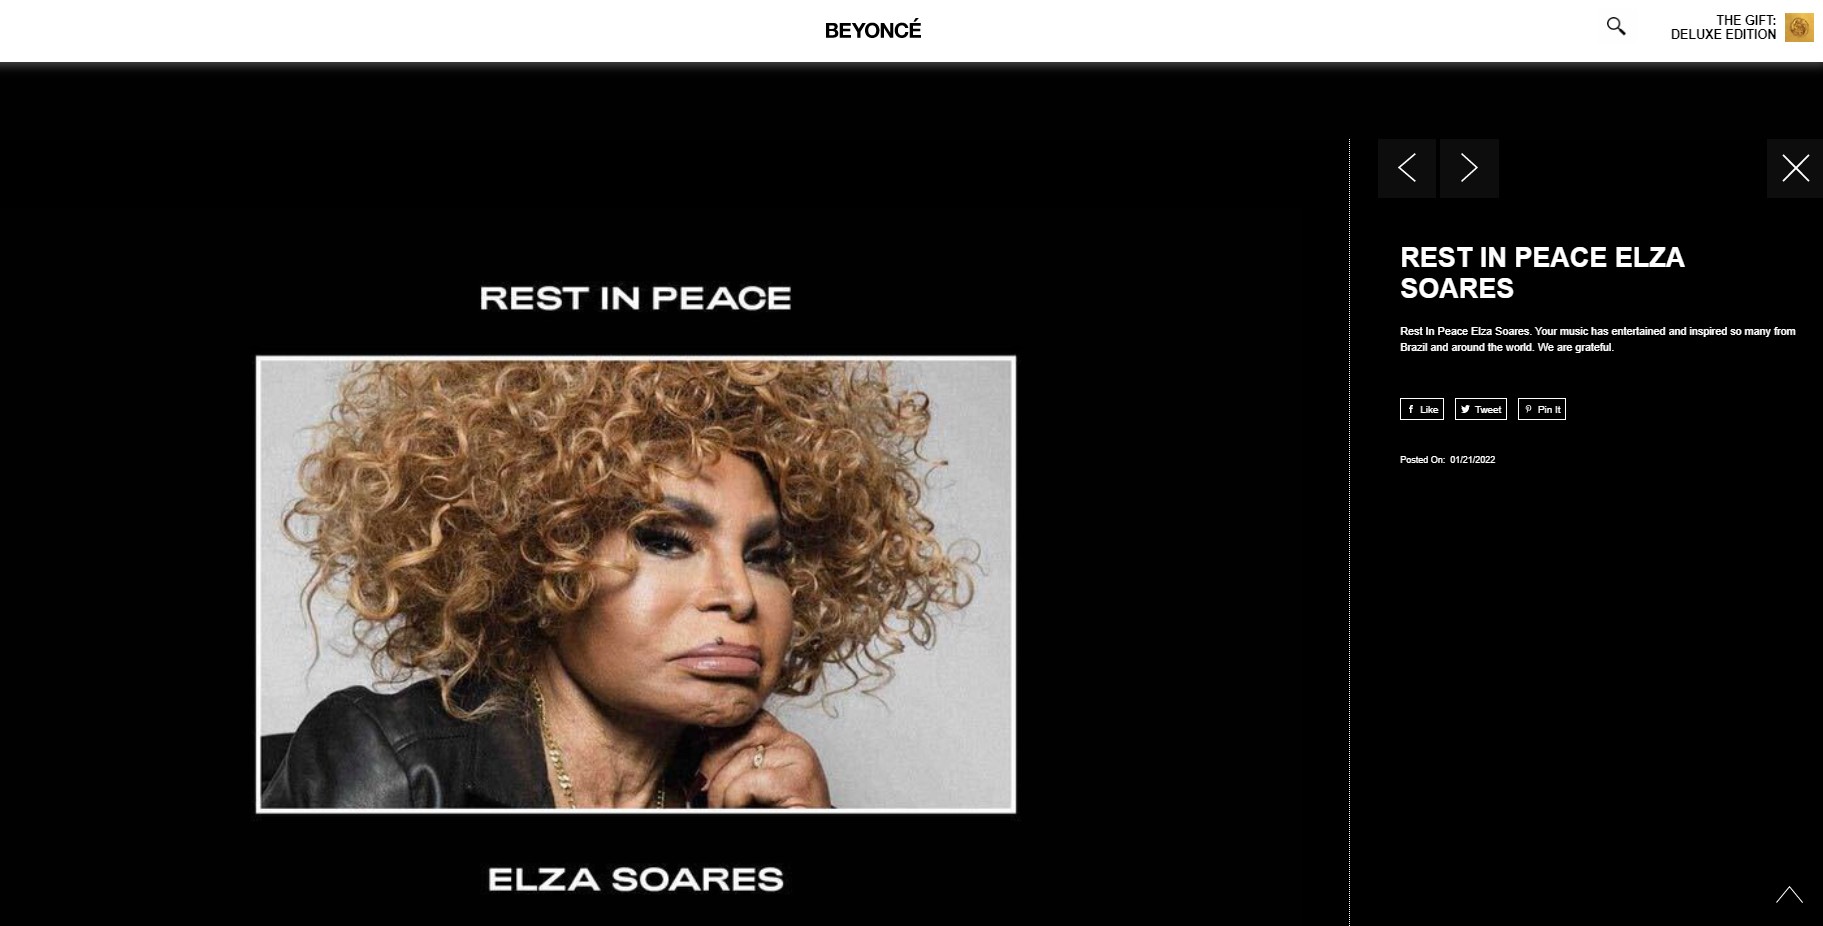 Beyoncé presta homenagem a Elza Soares em site oficial: 'Inspirou muitos no Brasil e ao redor do mundo' thumbnail